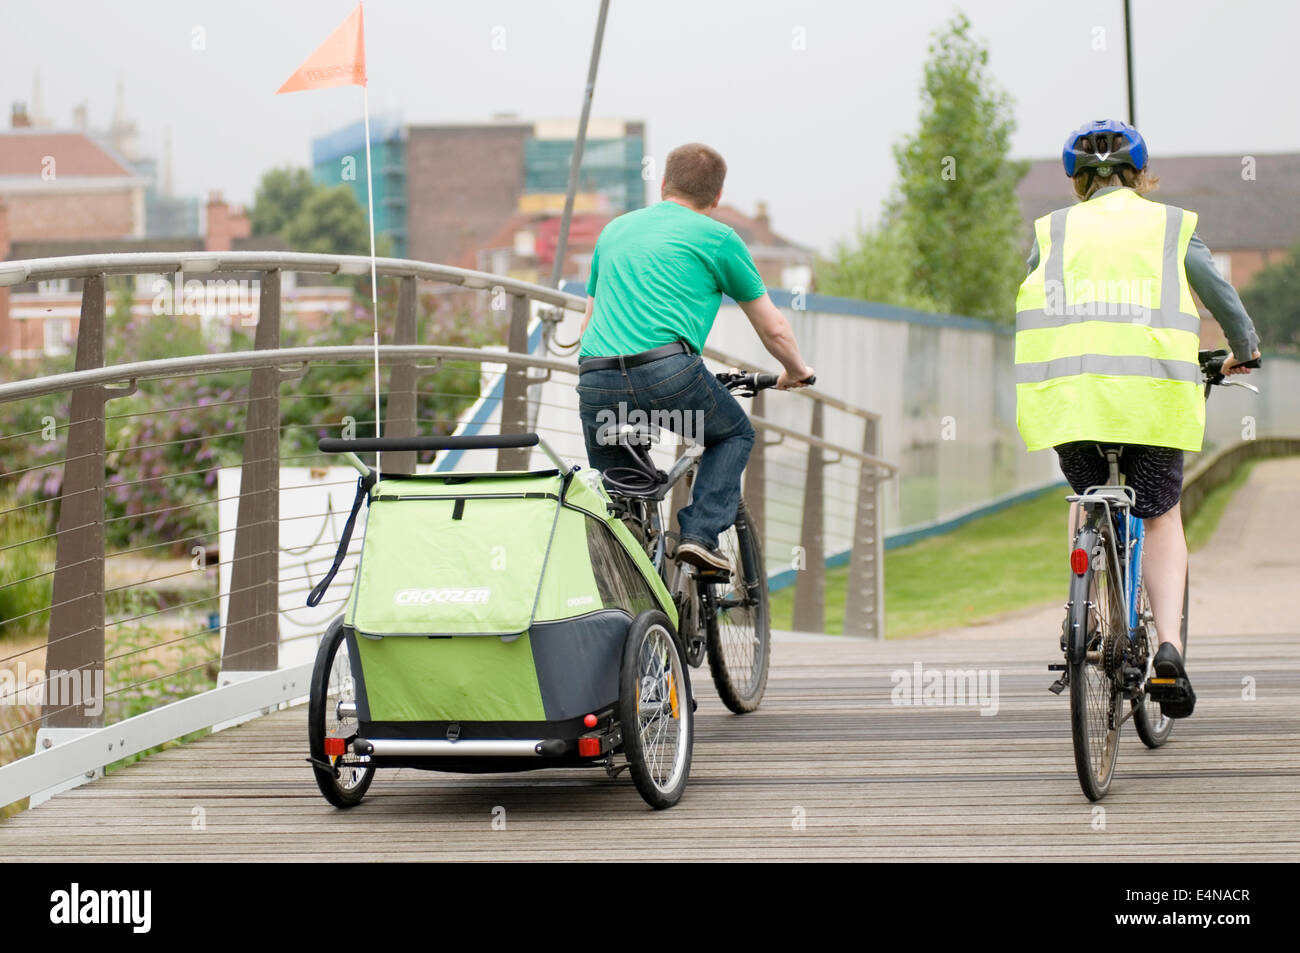 Indossando una elevata visibilità vis jacket vest lane ciclo corsie a York Regno Unito buggy trainare rimorchi kid kids bambini su in bambini doubl Foto Stock